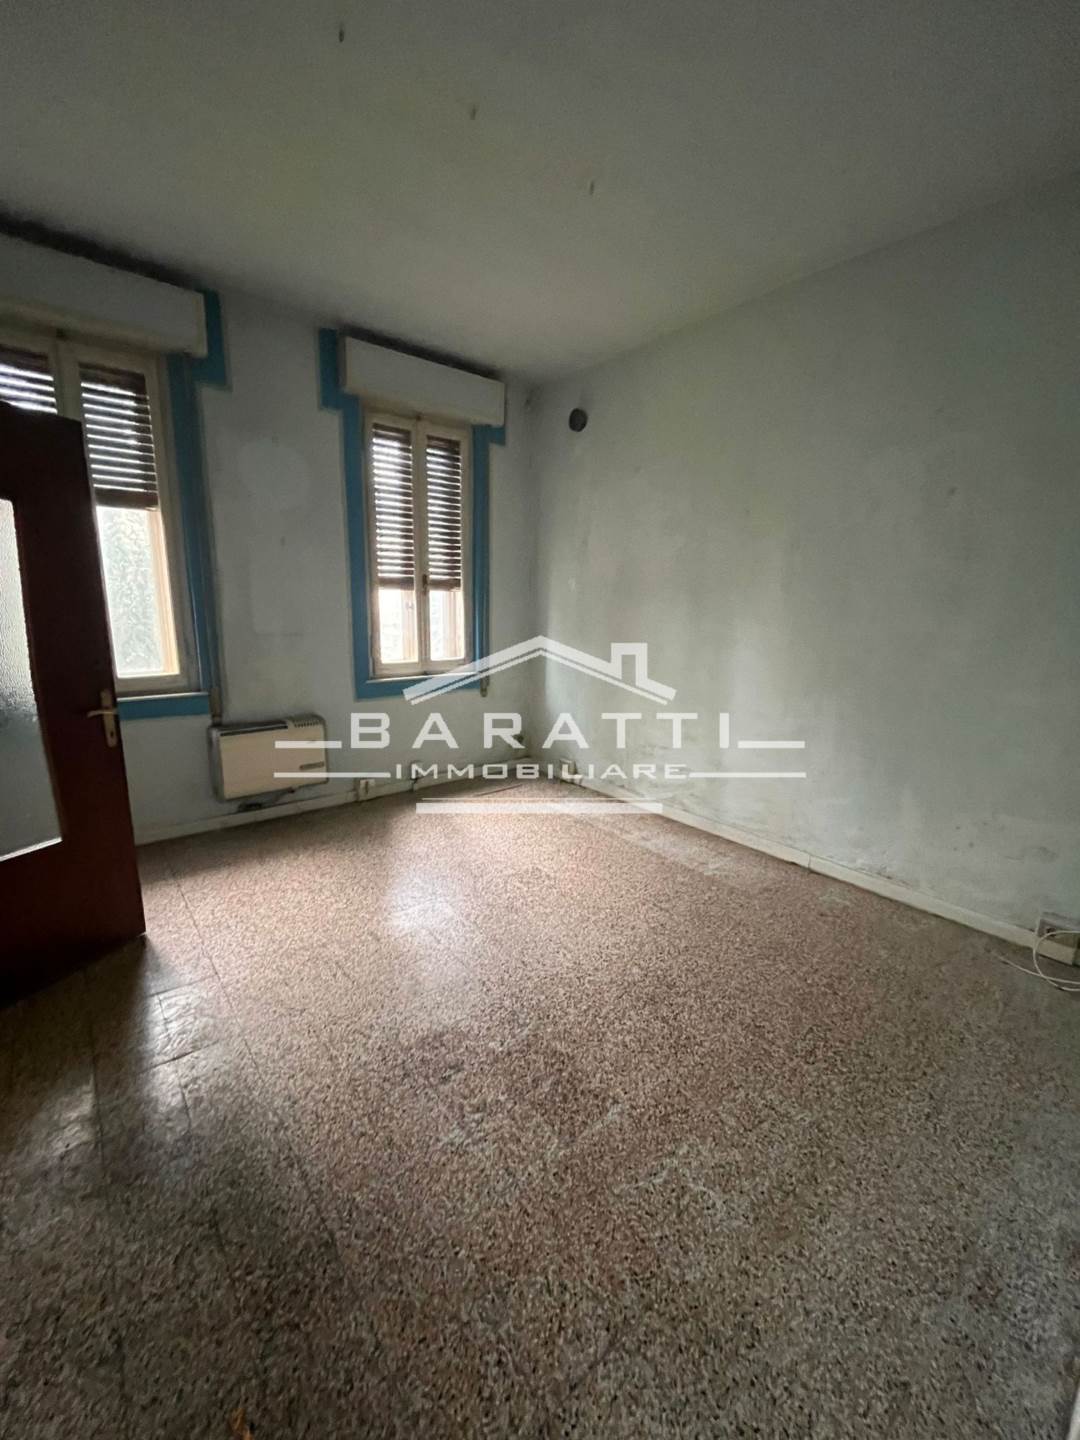 Villa Bifamiliare in vendita a Suzzara, 5 locali, prezzo € 110.000 | PortaleAgenzieImmobiliari.it